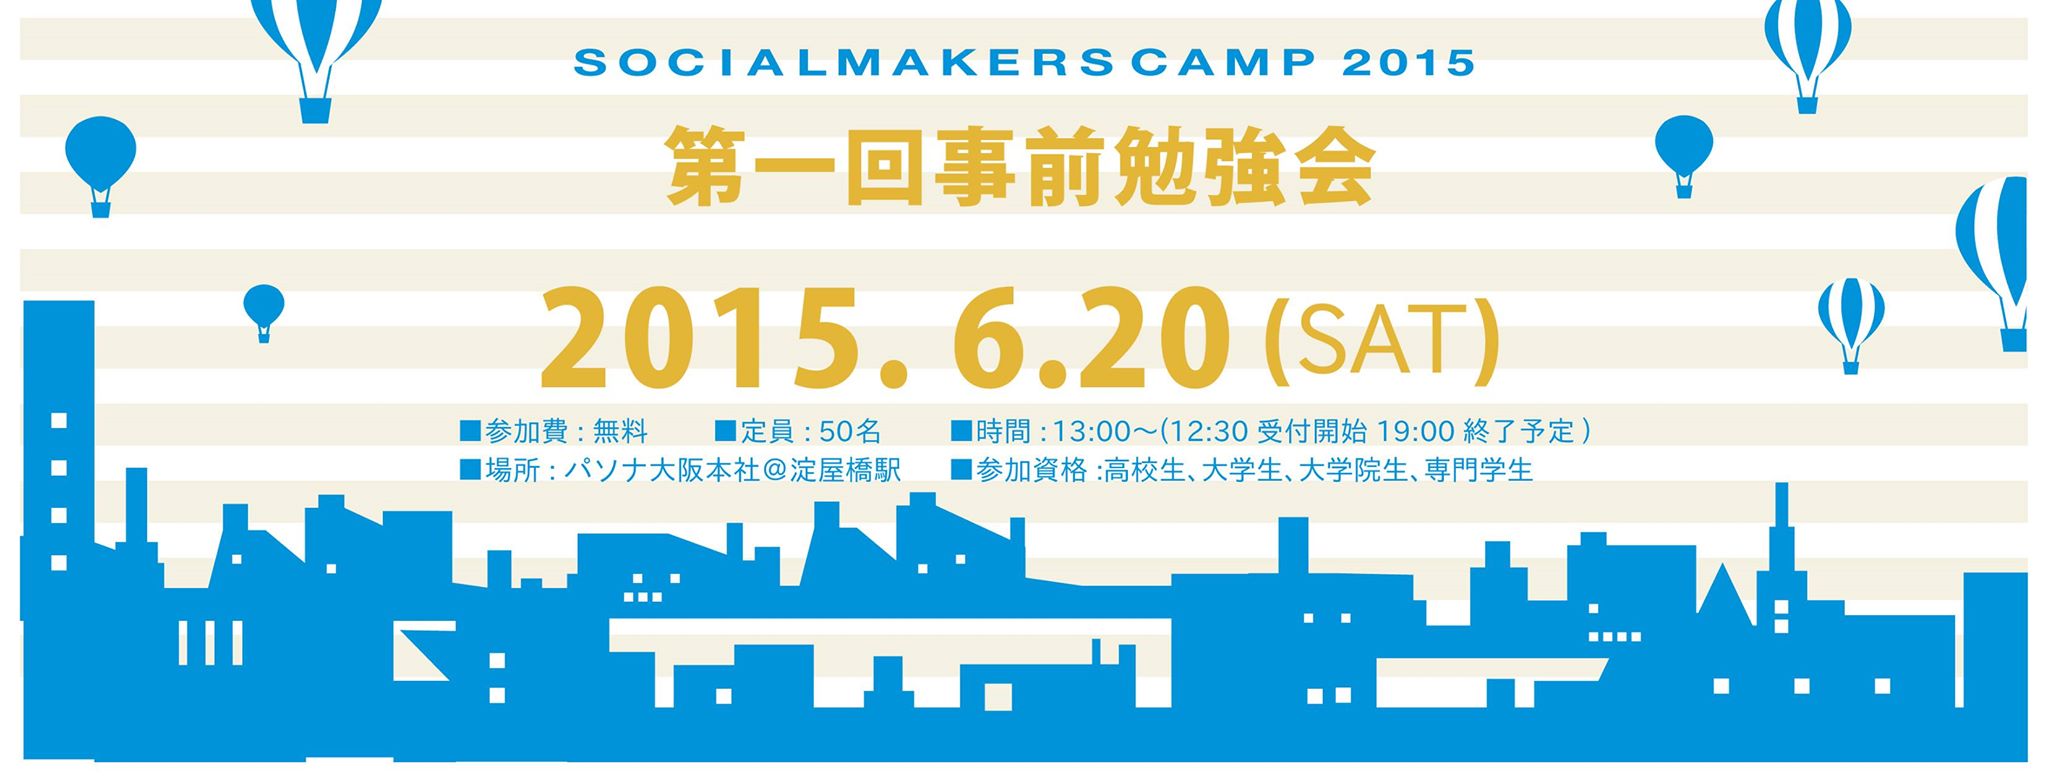 2015.6.20（土）SOCIAL MAKERS CAMP 2015（SMC2015)事前勉強会 ビジョン策定セミナー 「あなたのビジョン・ミッションはなんですか？」